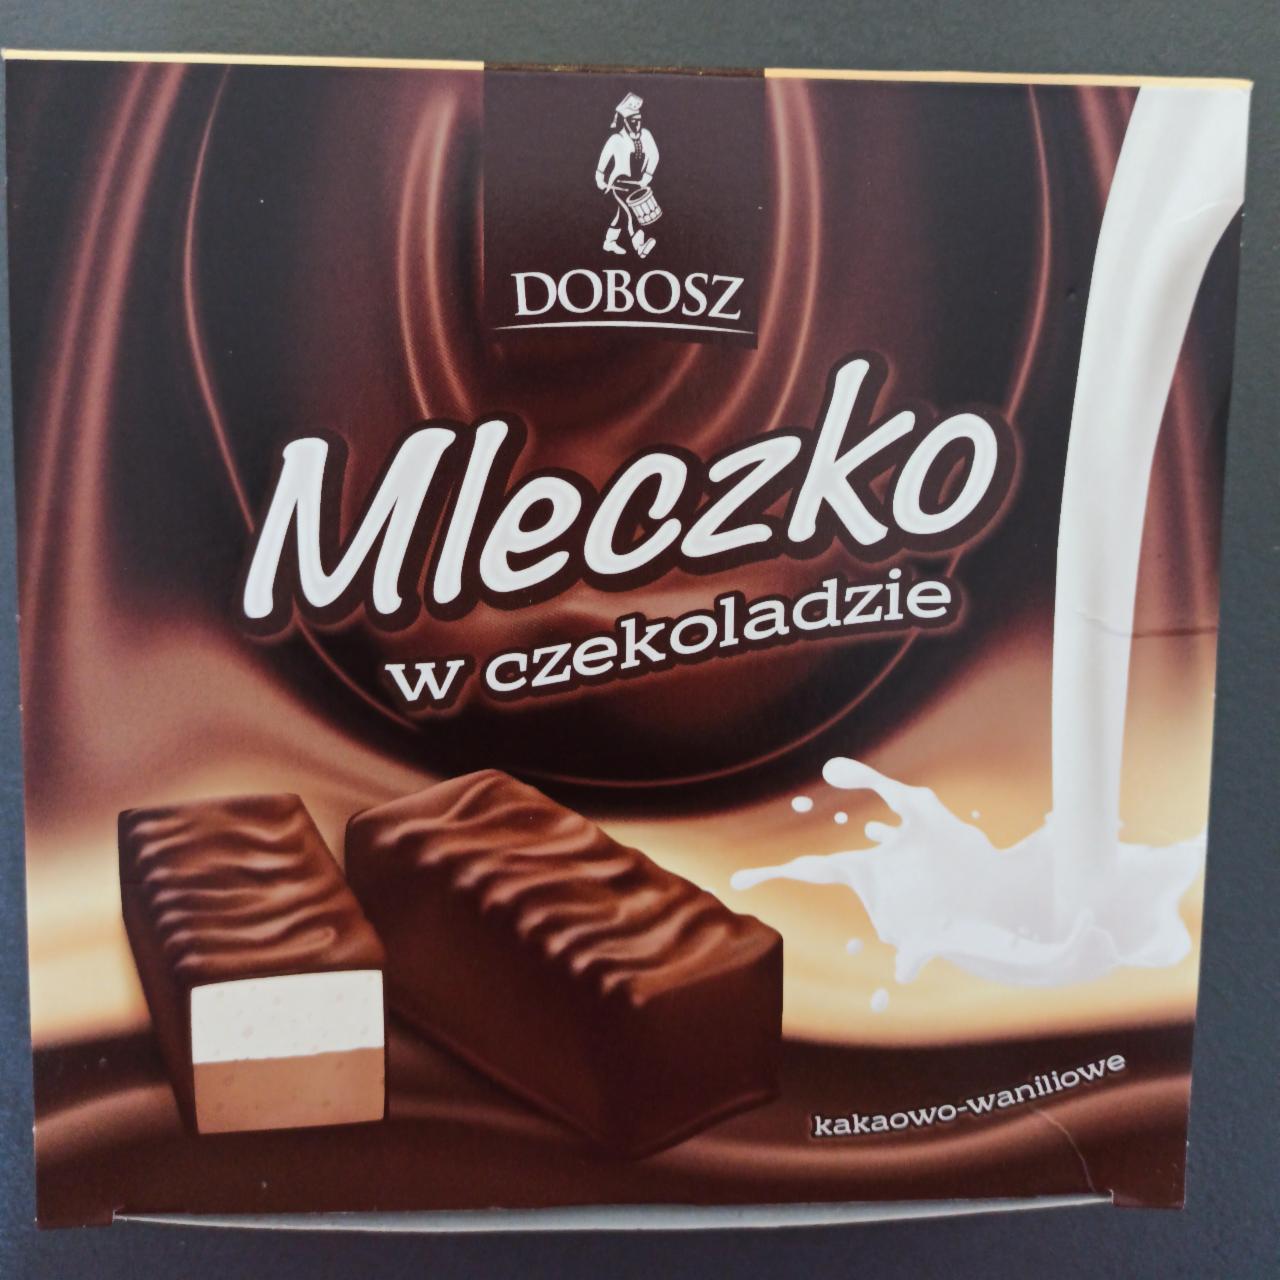 Zdjęcia - Mleczko w czekoladzie kakaowo-waniliowe Dobosz